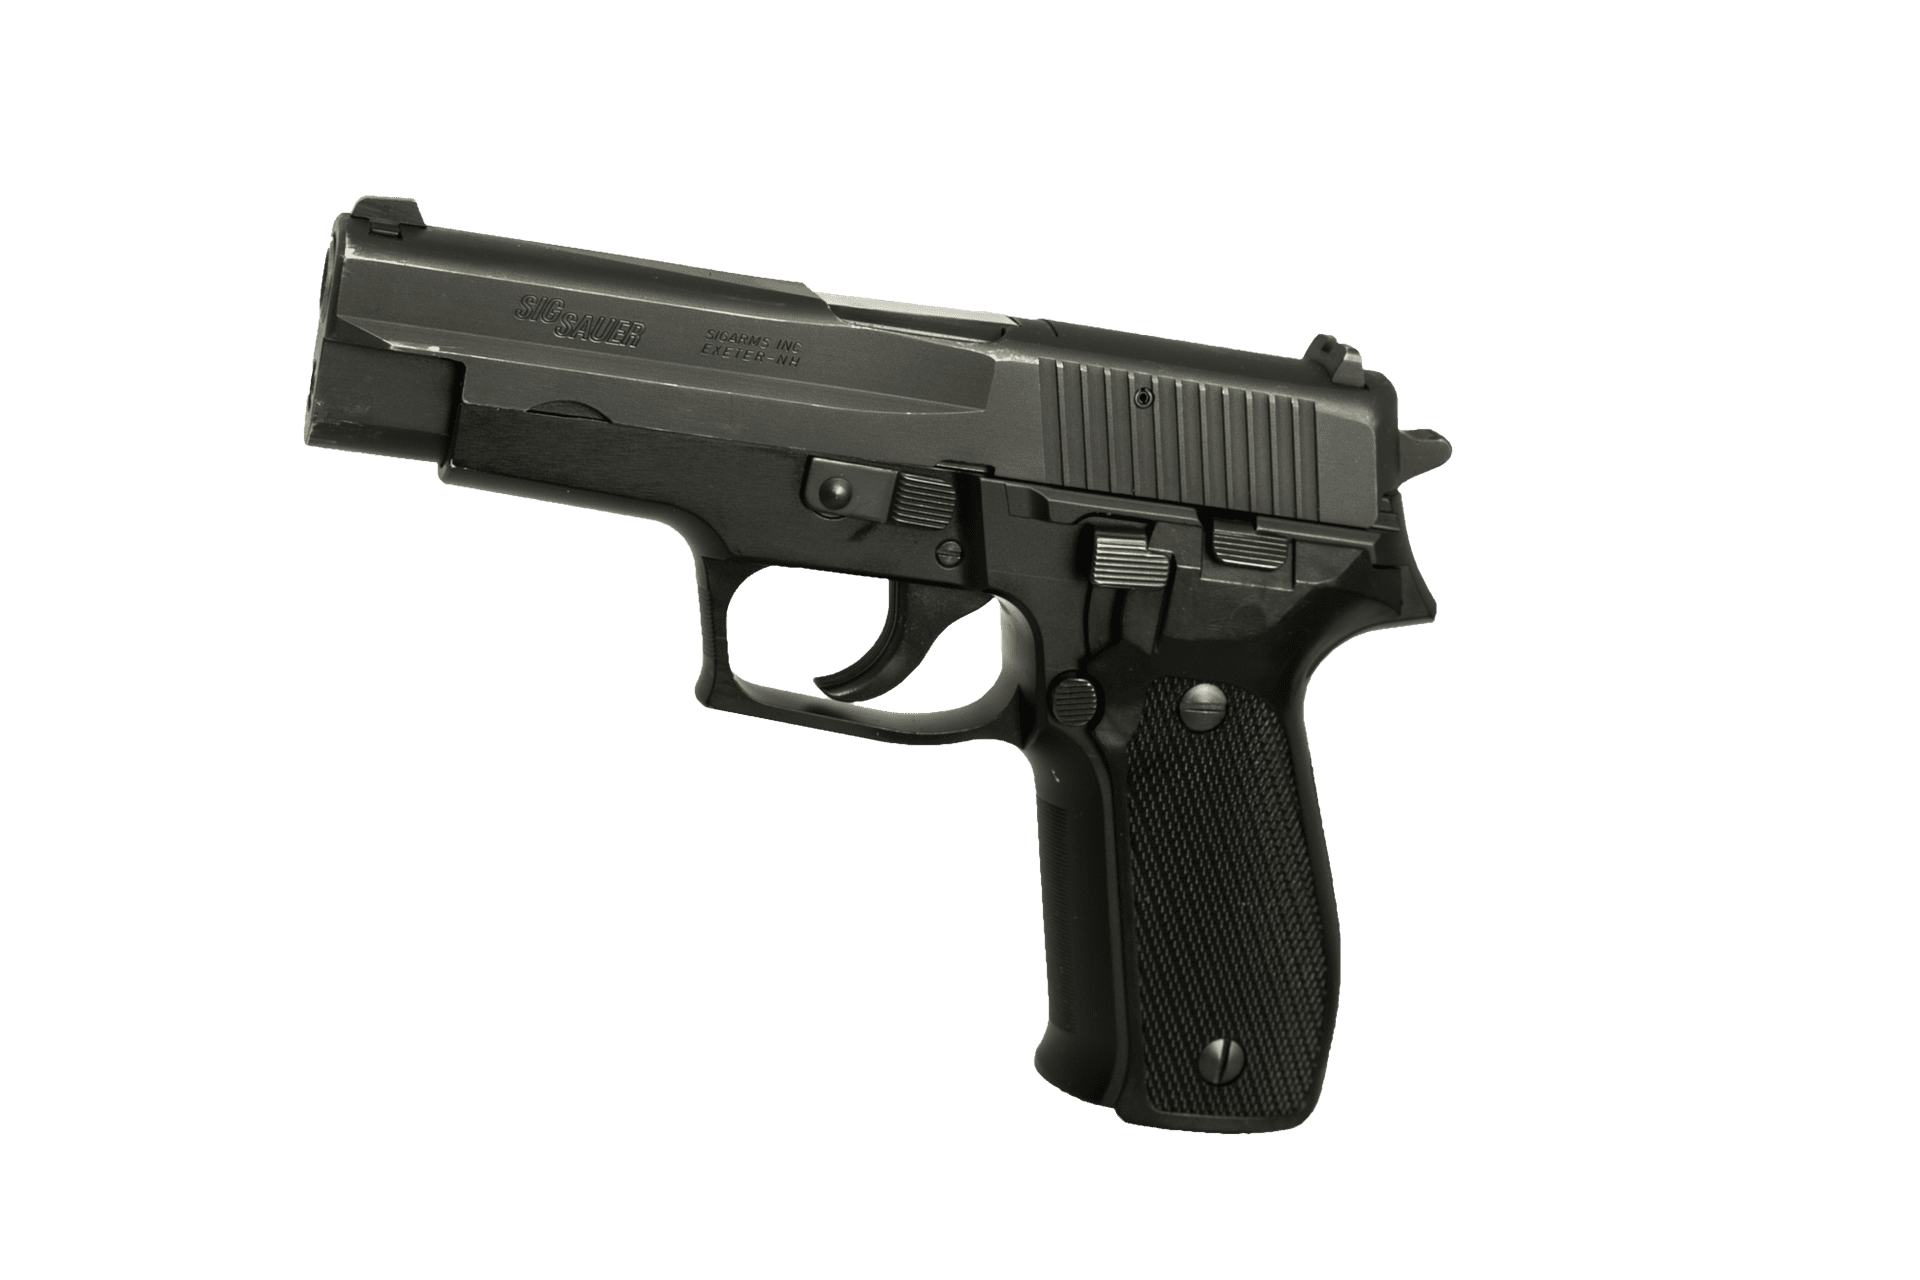 Pictured - A Sig Sauer handgun | Source: Pixabay 